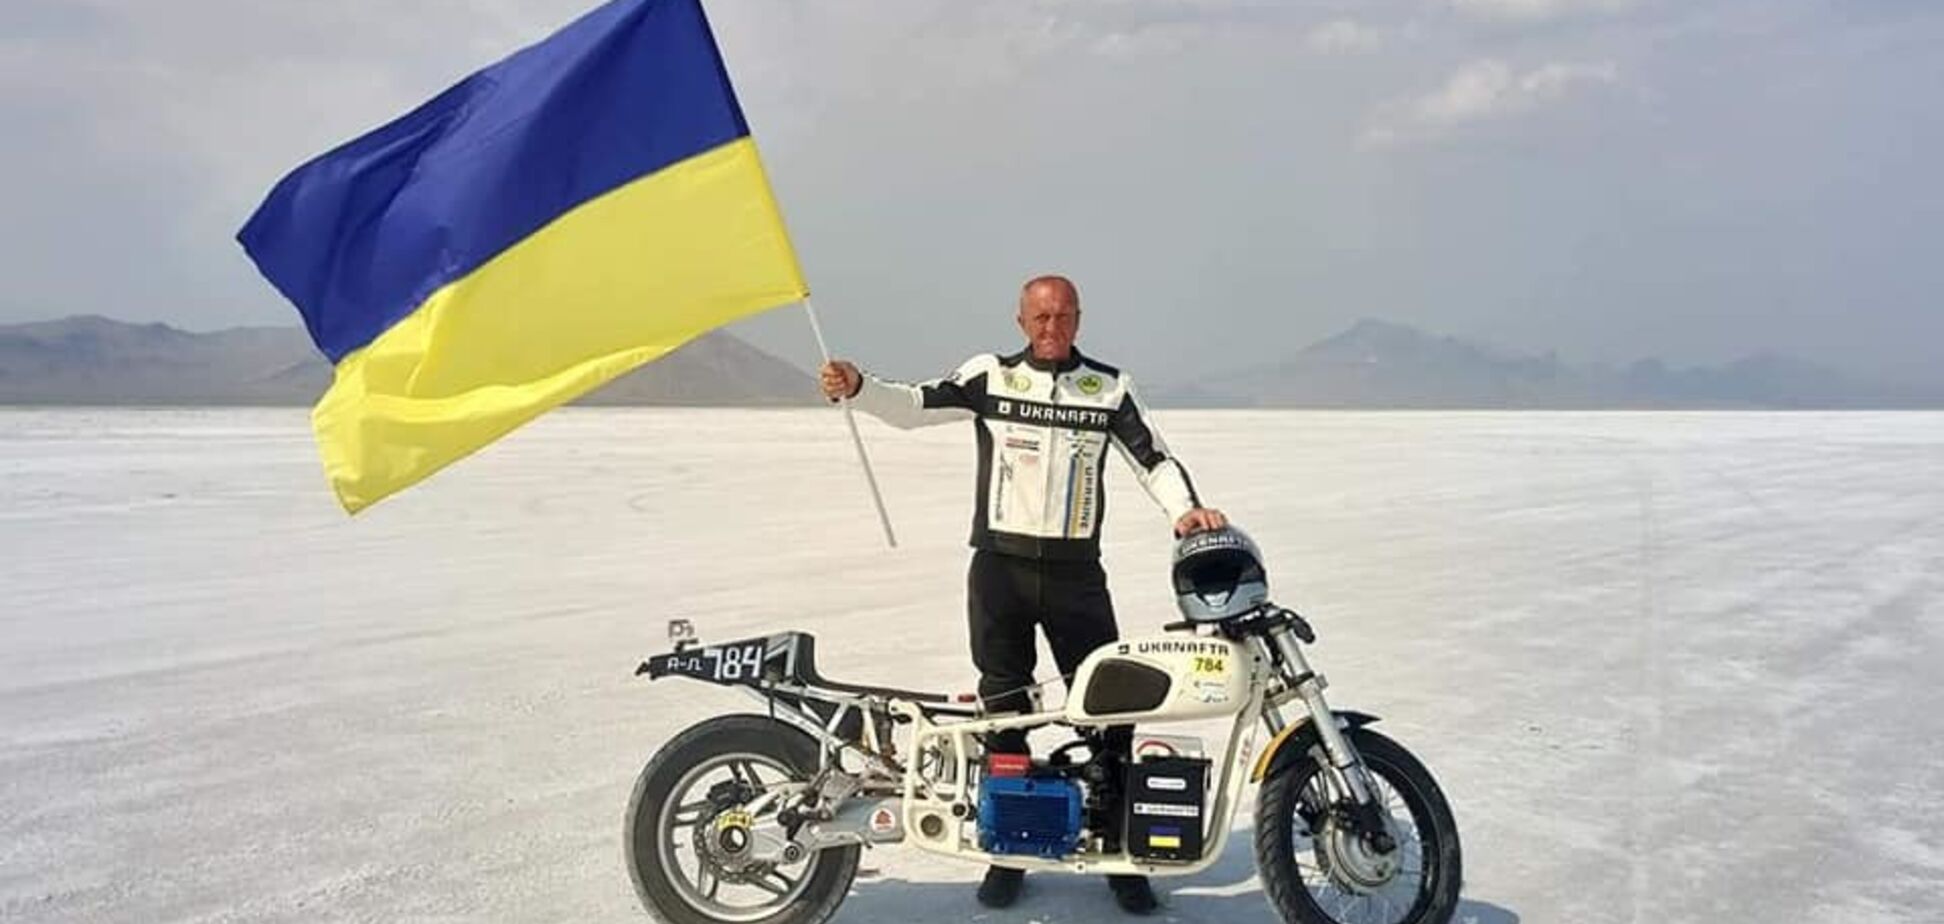 Українець на мотоциклі 'Дніпро' встановив неймовірний світовий рекорд